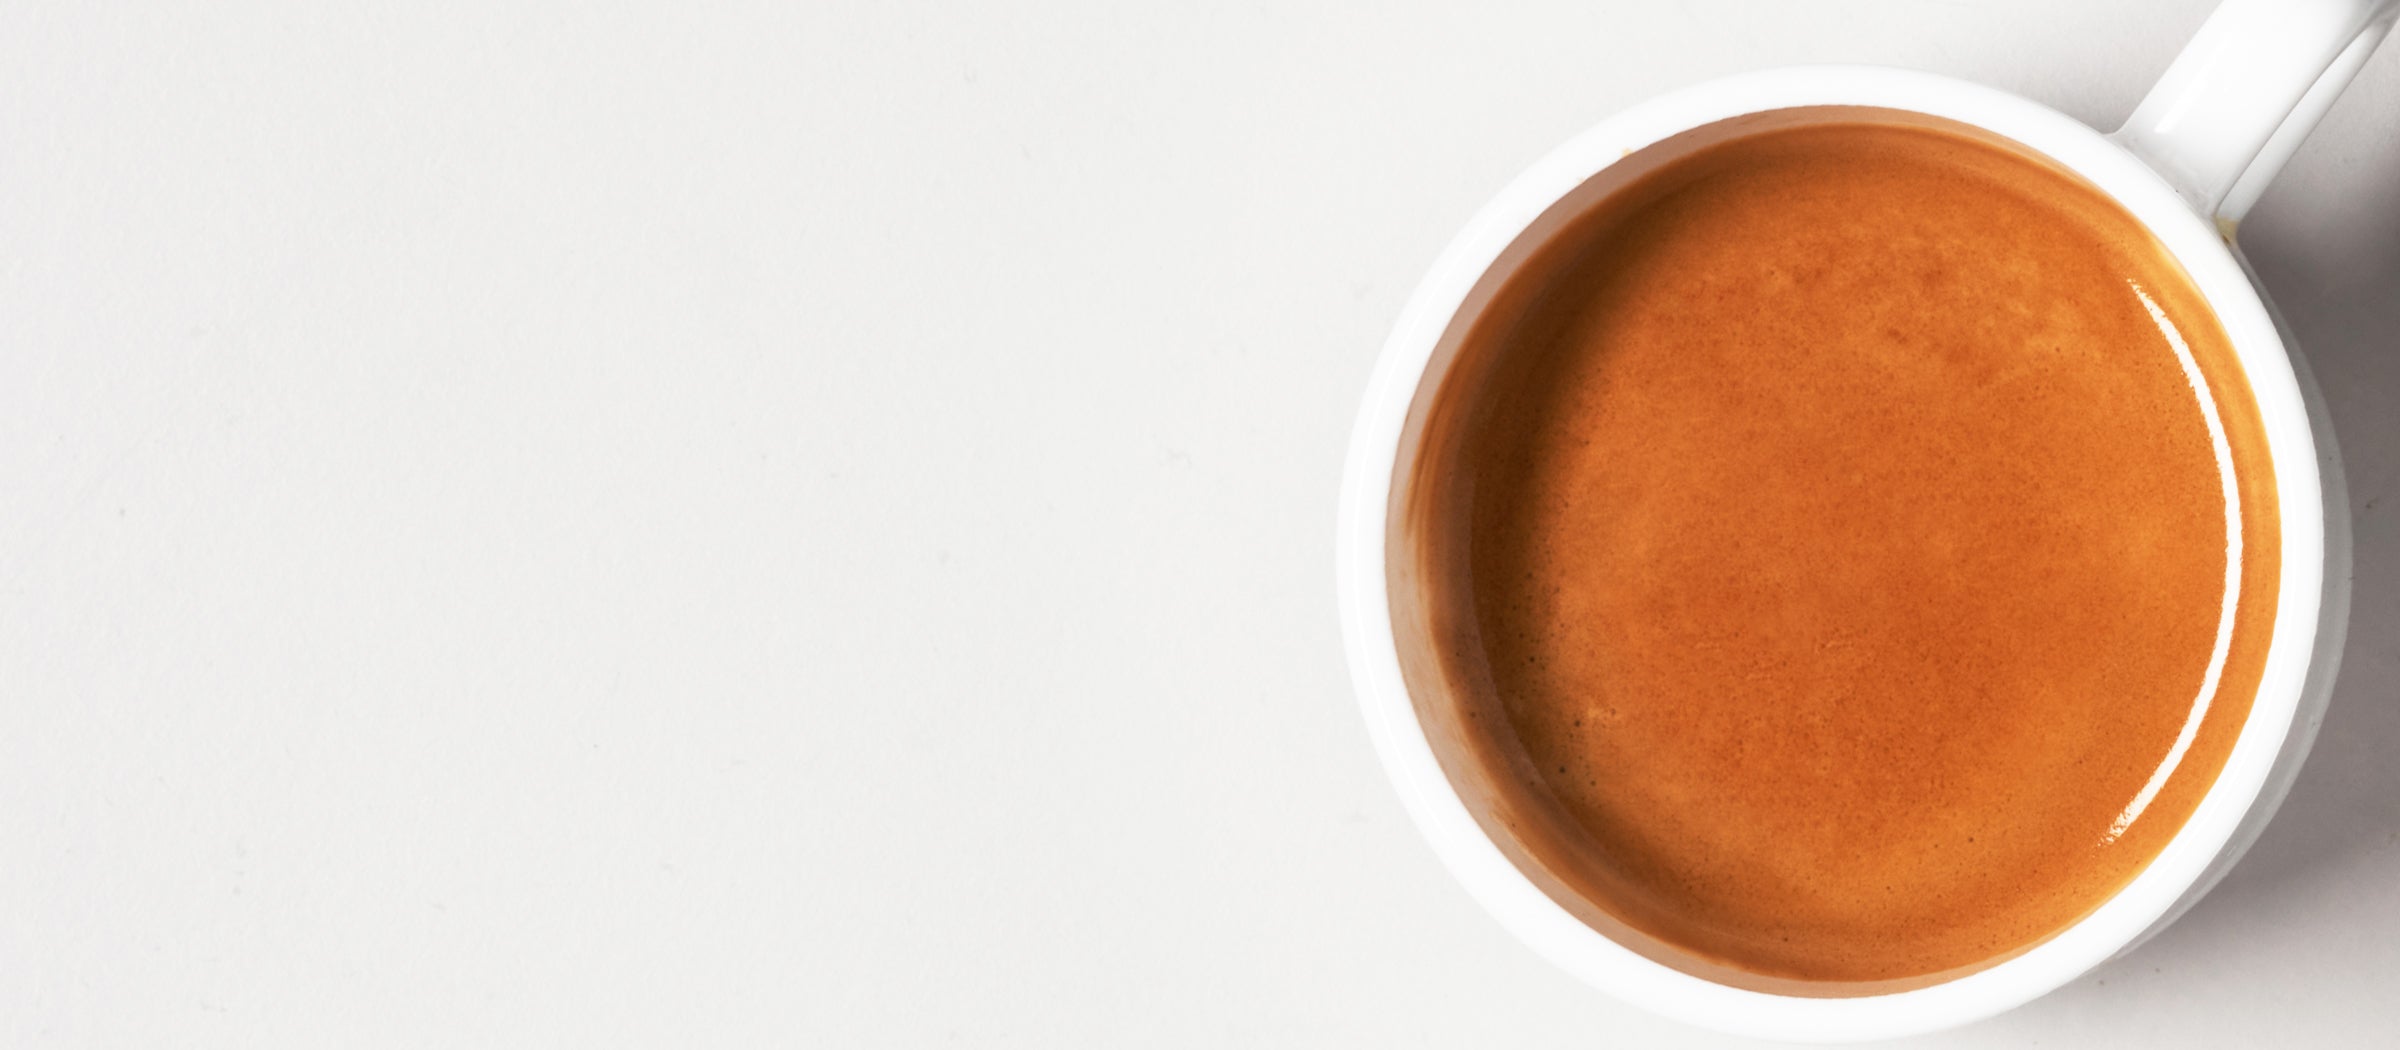 Karajoz Coffee New Zealand Small Batch Freshly Roasted espresso